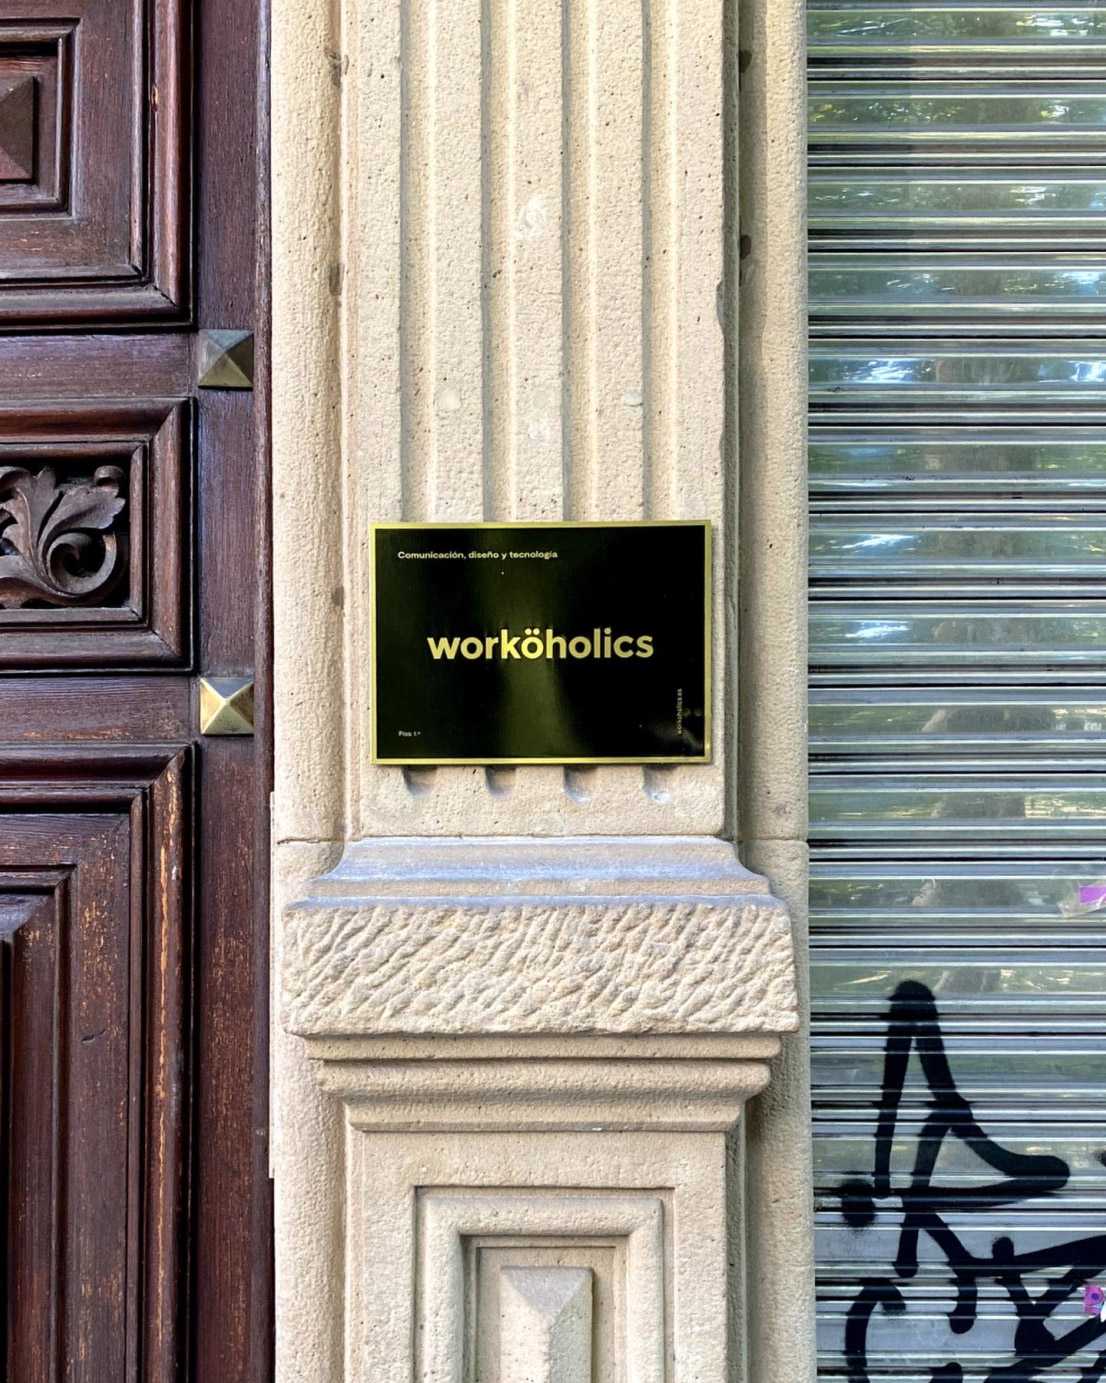 Worköholics placa de entrada